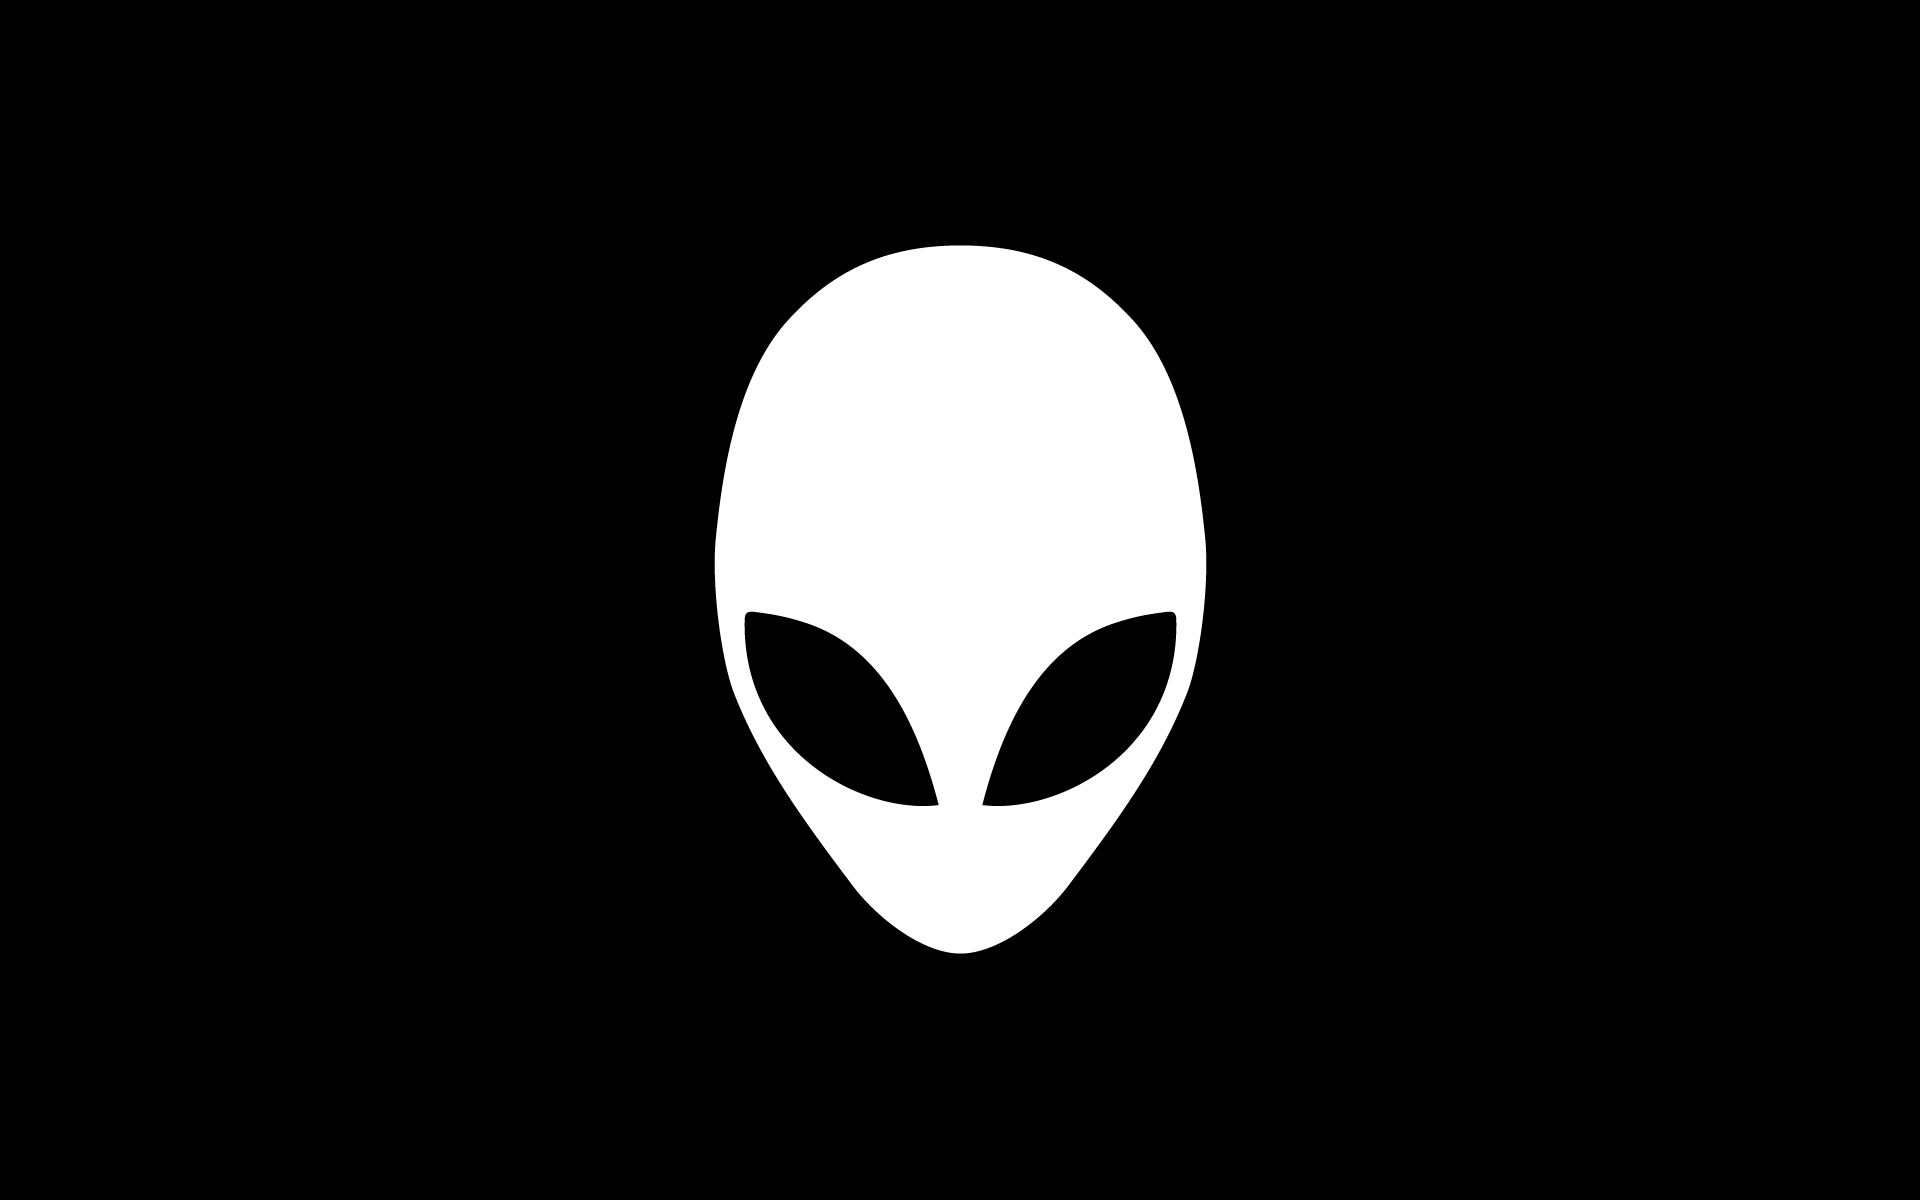 Alienware, logos - desktop wallpaper